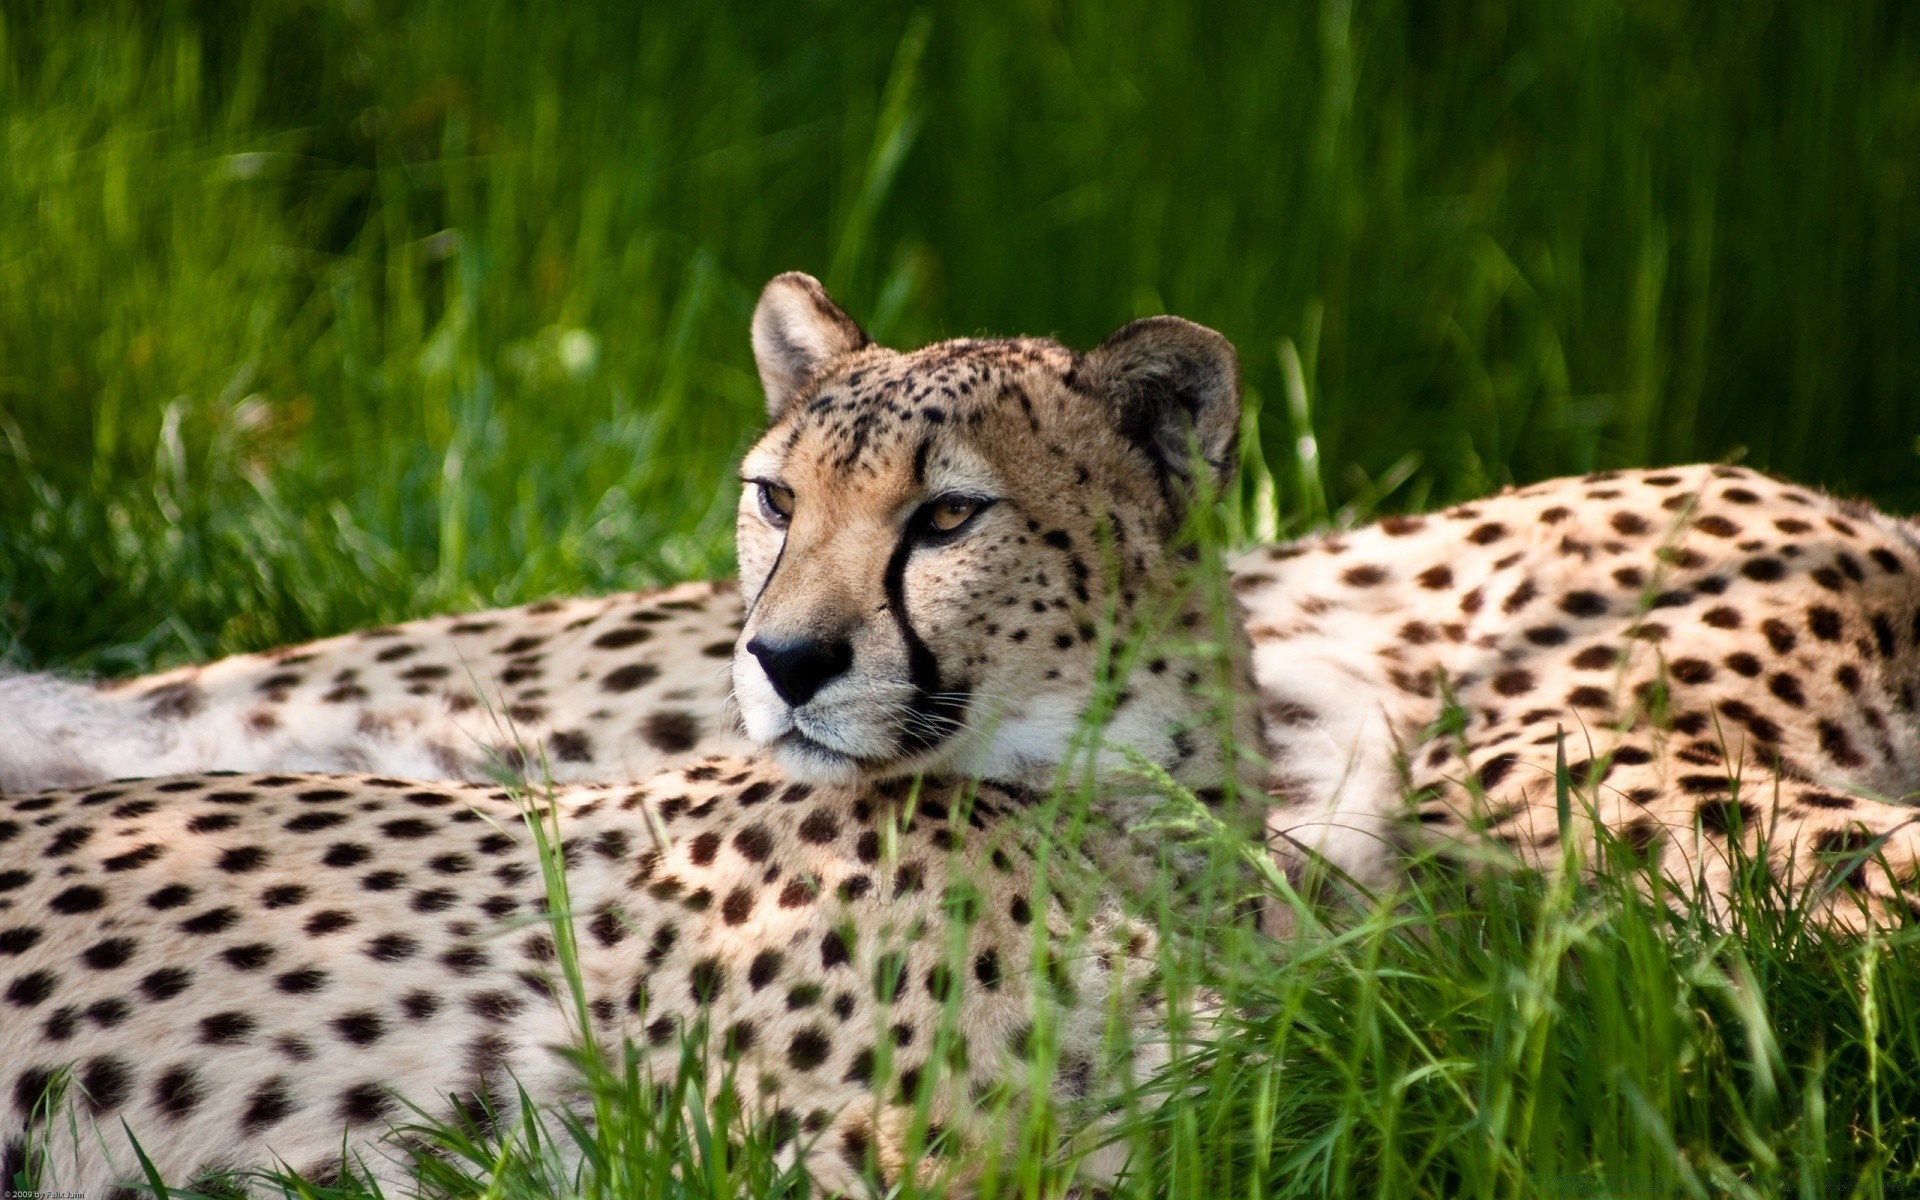 животные дикой природы гепард млекопитающее дикий трава кошка хищник природа мясоед сафари охотник животное зоопарк леопард